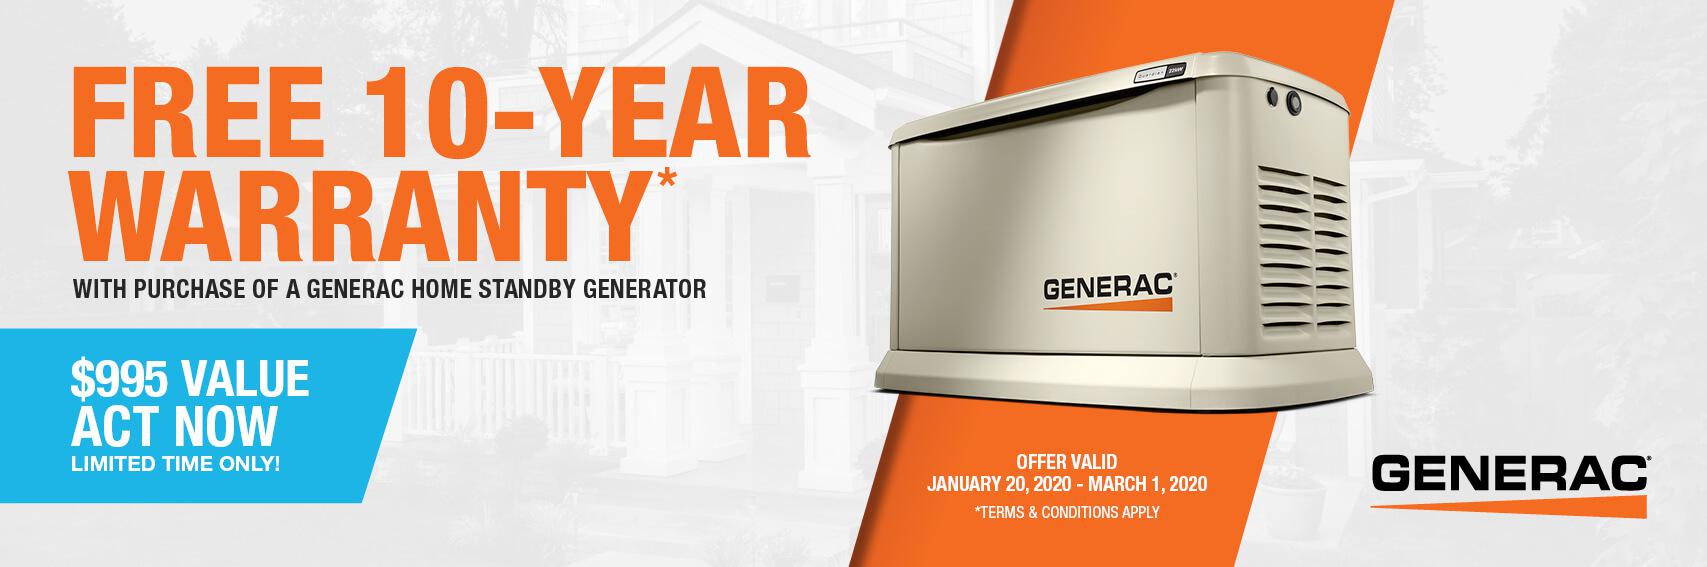 Homestandby Generator Deal | Warranty Offer | Generac Dealer | Hillsville, VA